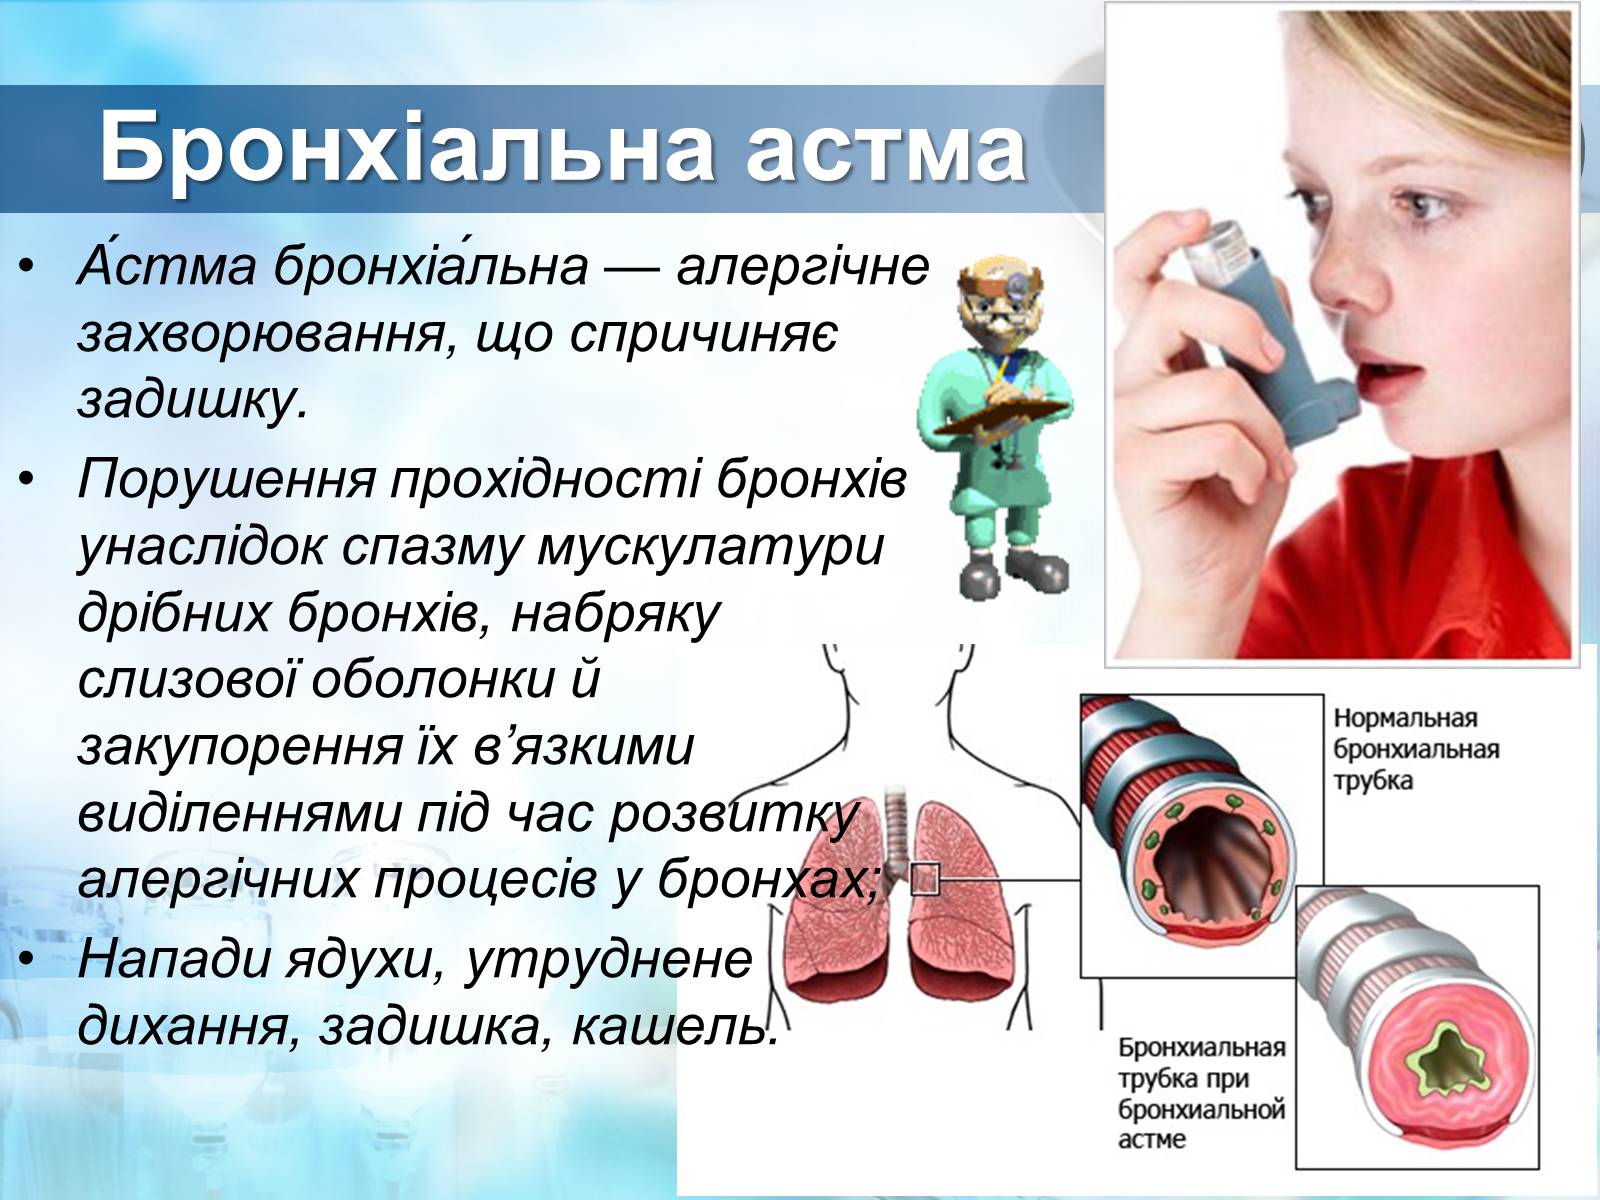 Бронхиальная астма называют. Бронхиальная астма. Заболевания органов дыхания бронхиальная астма. Аллергическая бронхиальная астма.